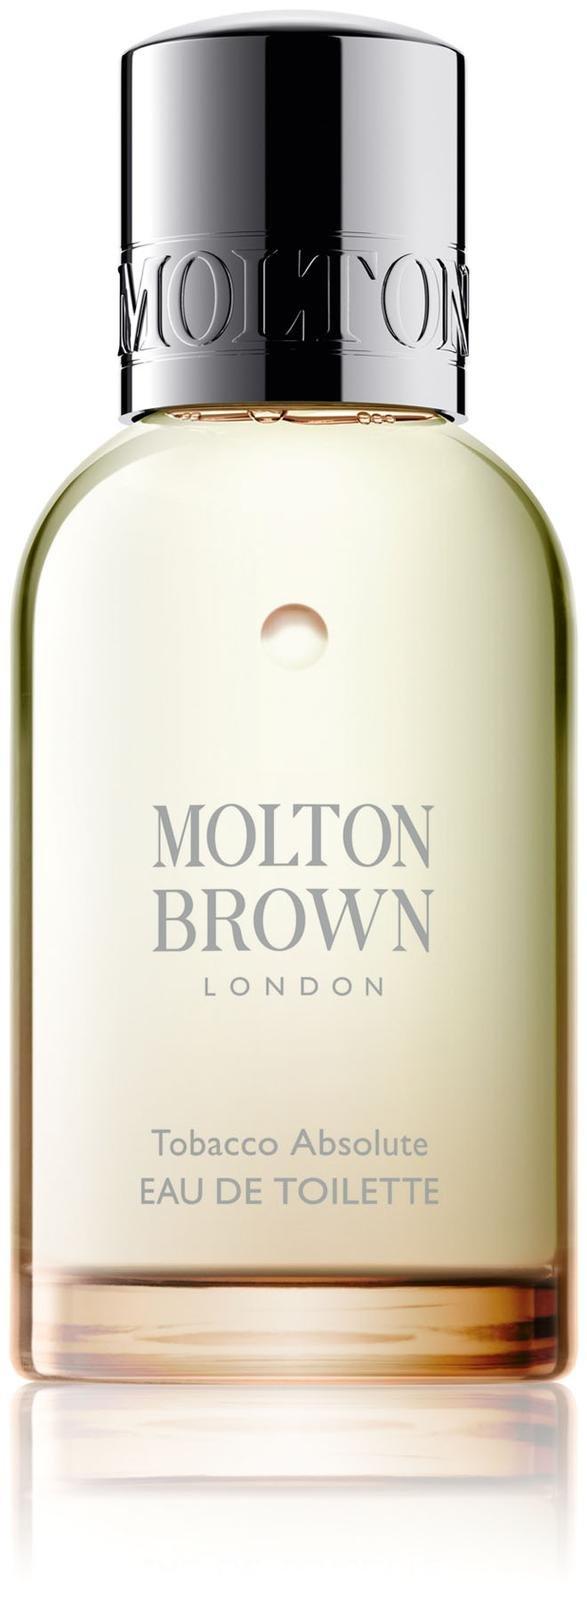 Molton Brown Eau De Toilette - Tobacco Absolute - 1.7 Oz